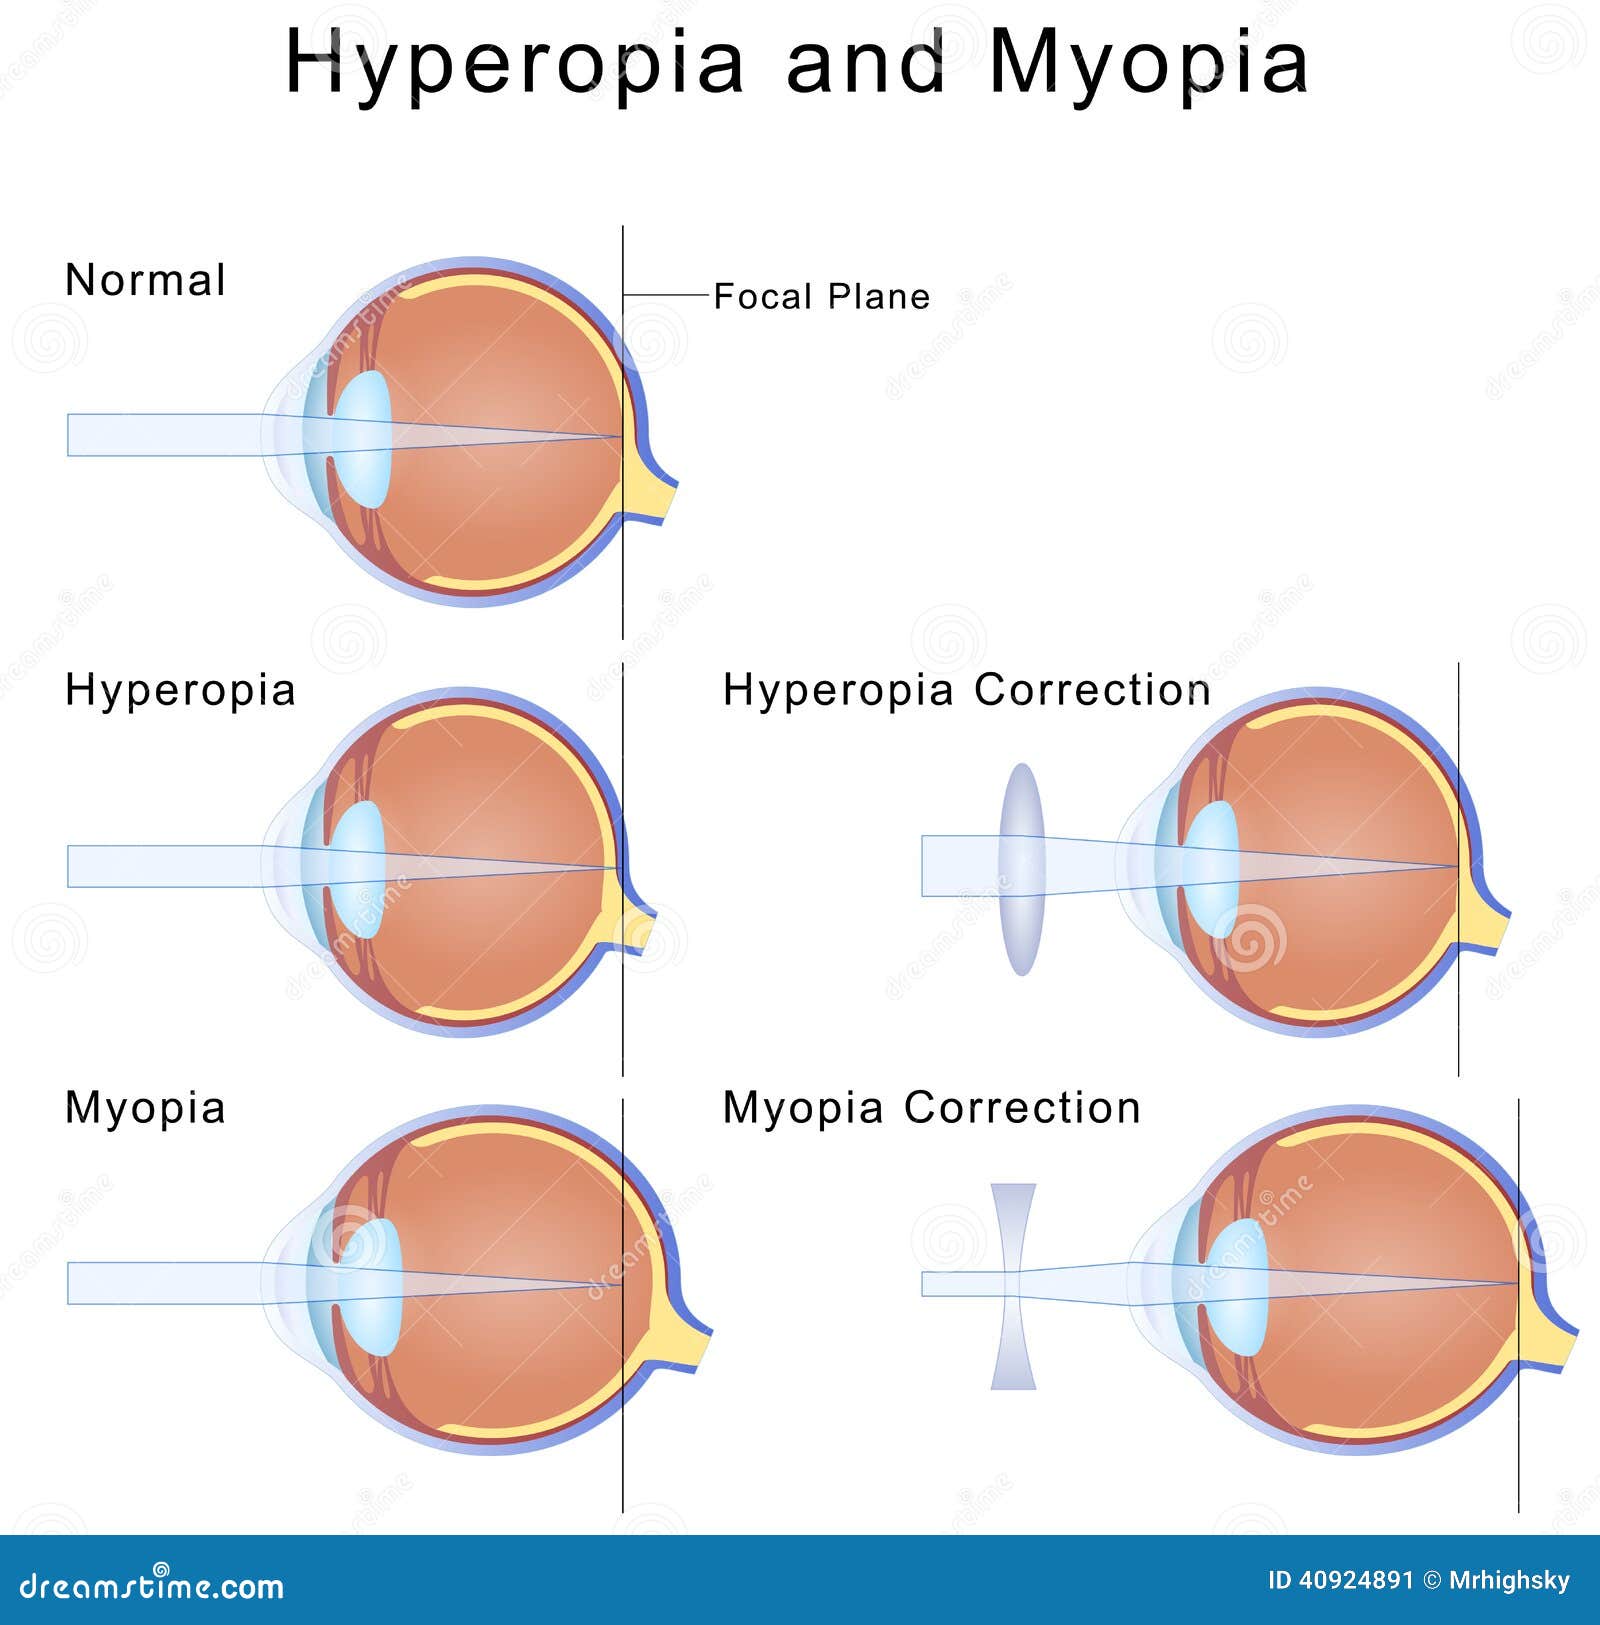 myopia hypermetropia astigmatism